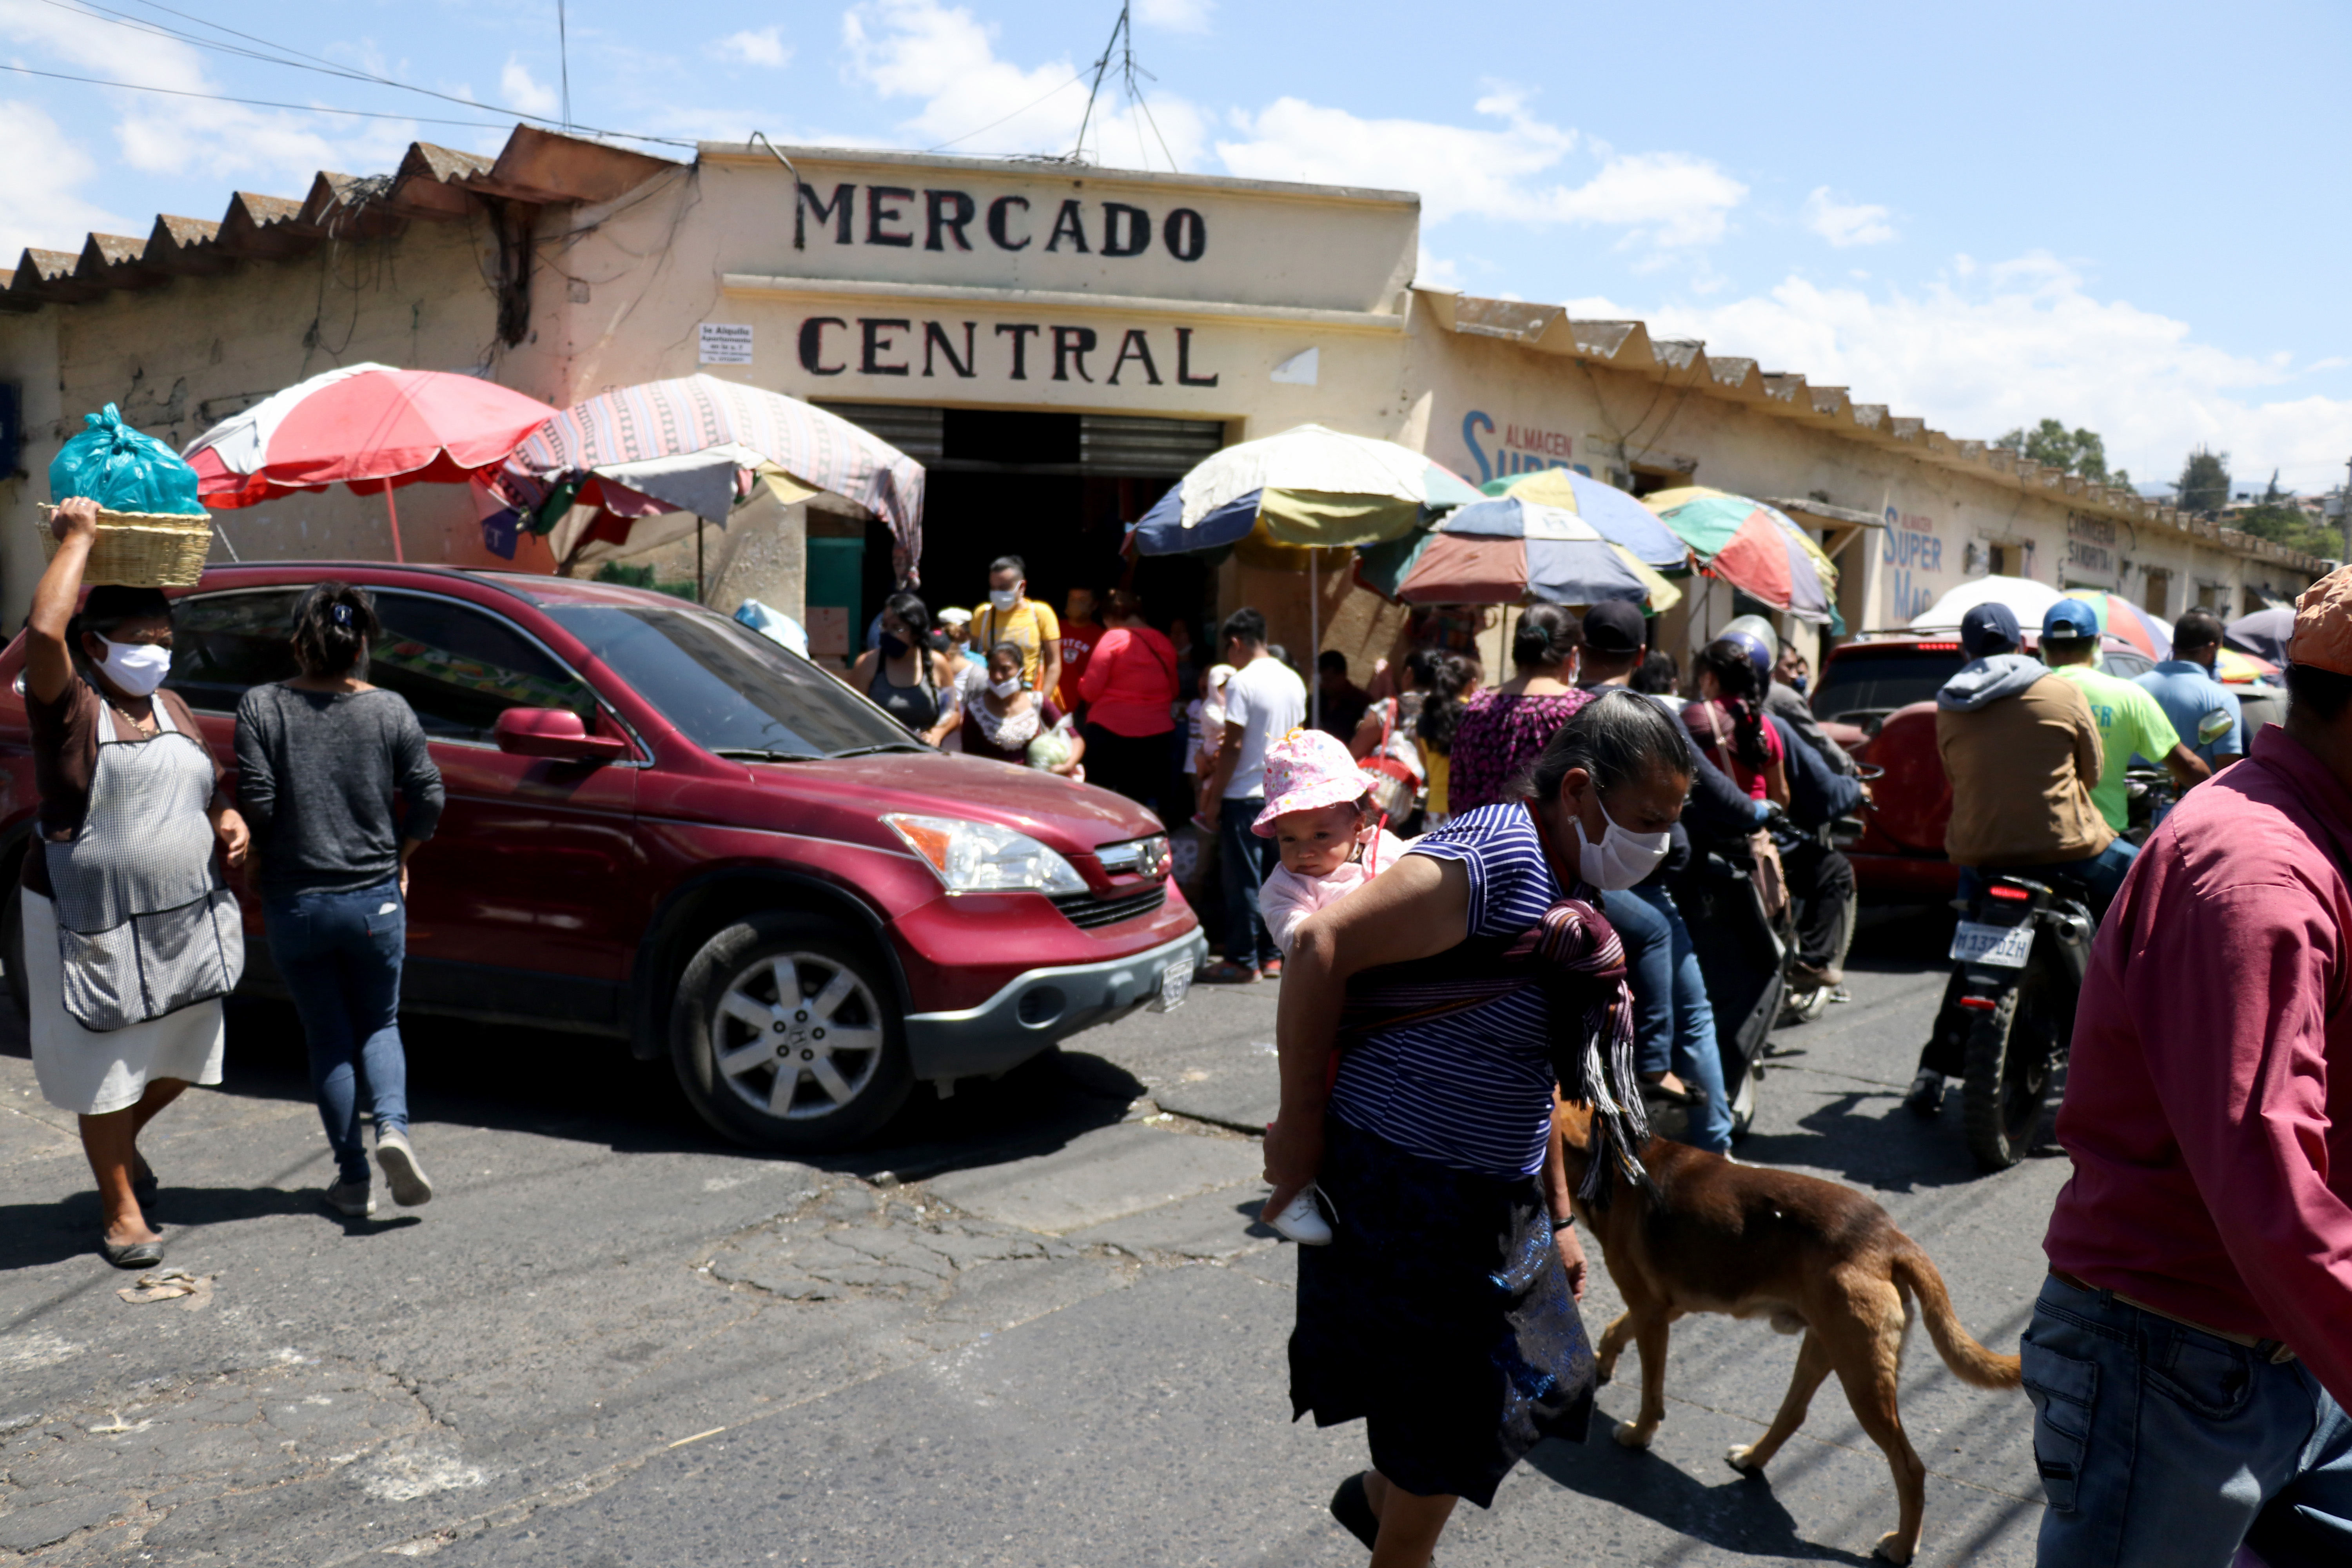 Decenas de huehuetecos se aglomeran en el ingreso mercado central y sus alrededores para adquirir artículos de primera necesidad.  (Foto Prensa Libre: Mike Castillo)